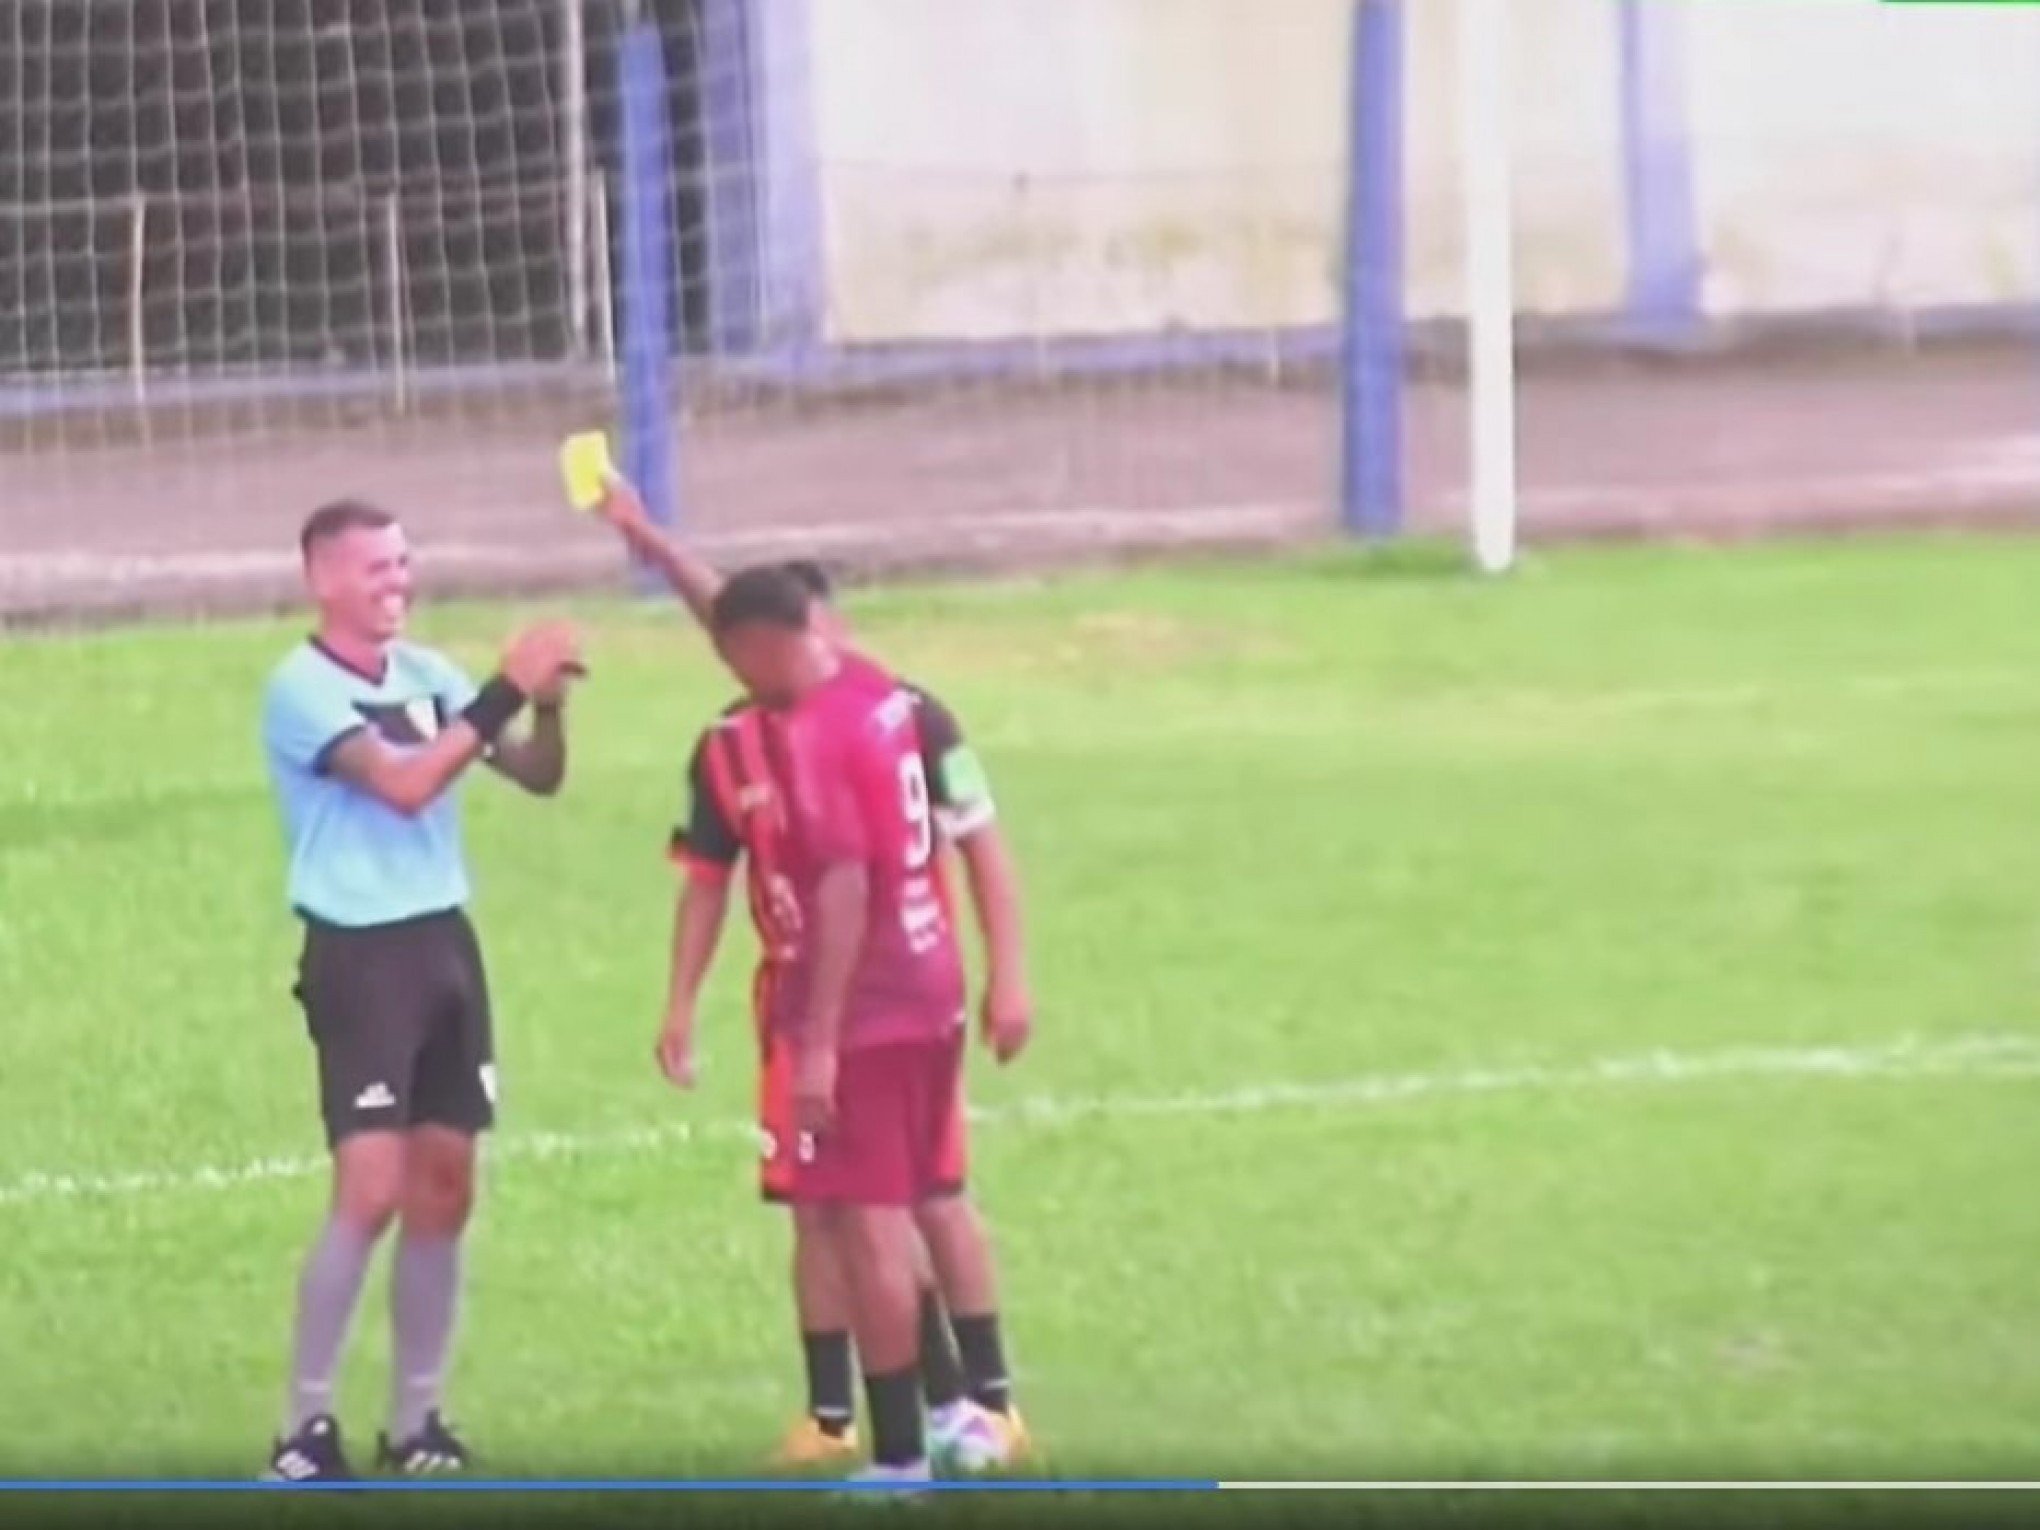 Árbitro dá carrinho por trás e recebe cartão amarelo do próprio jogador em Municipal de Futebol da região; veja vídeo